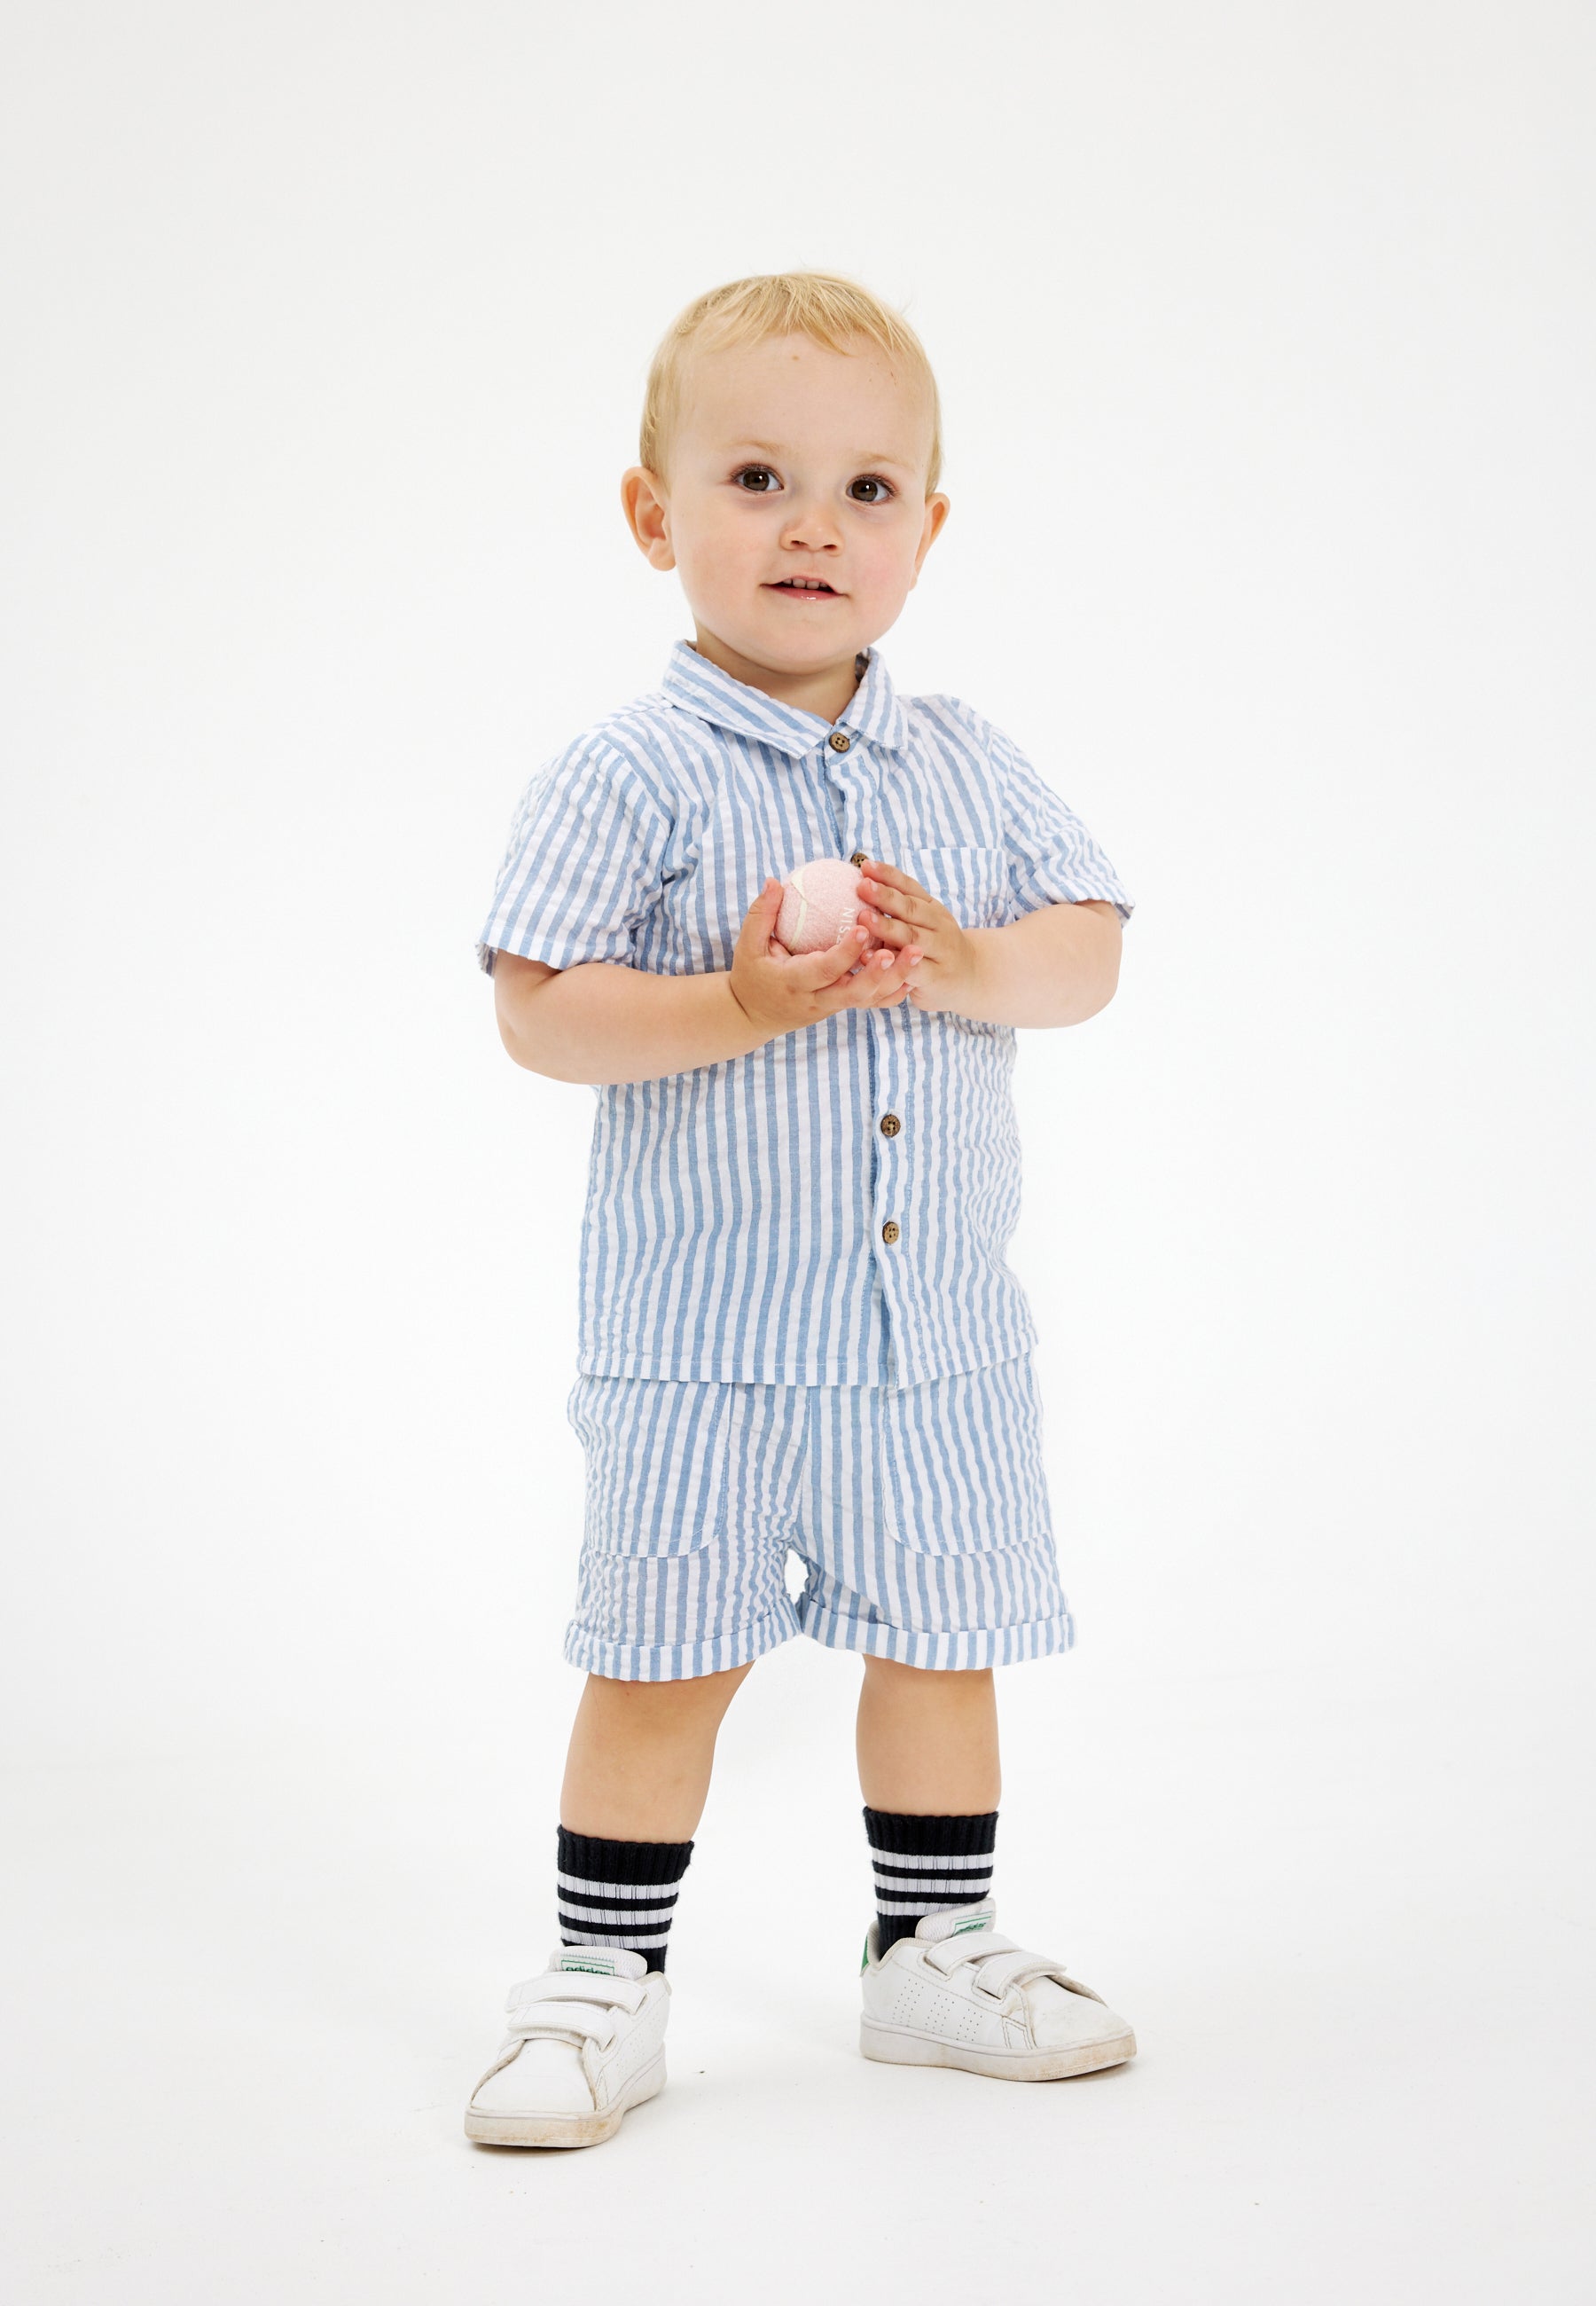 Shop tøj til baby drengen fra 0-4 år. Her hos THE NEW siblings finder du bl.a. nye styles fra Autumn23 kollektionen